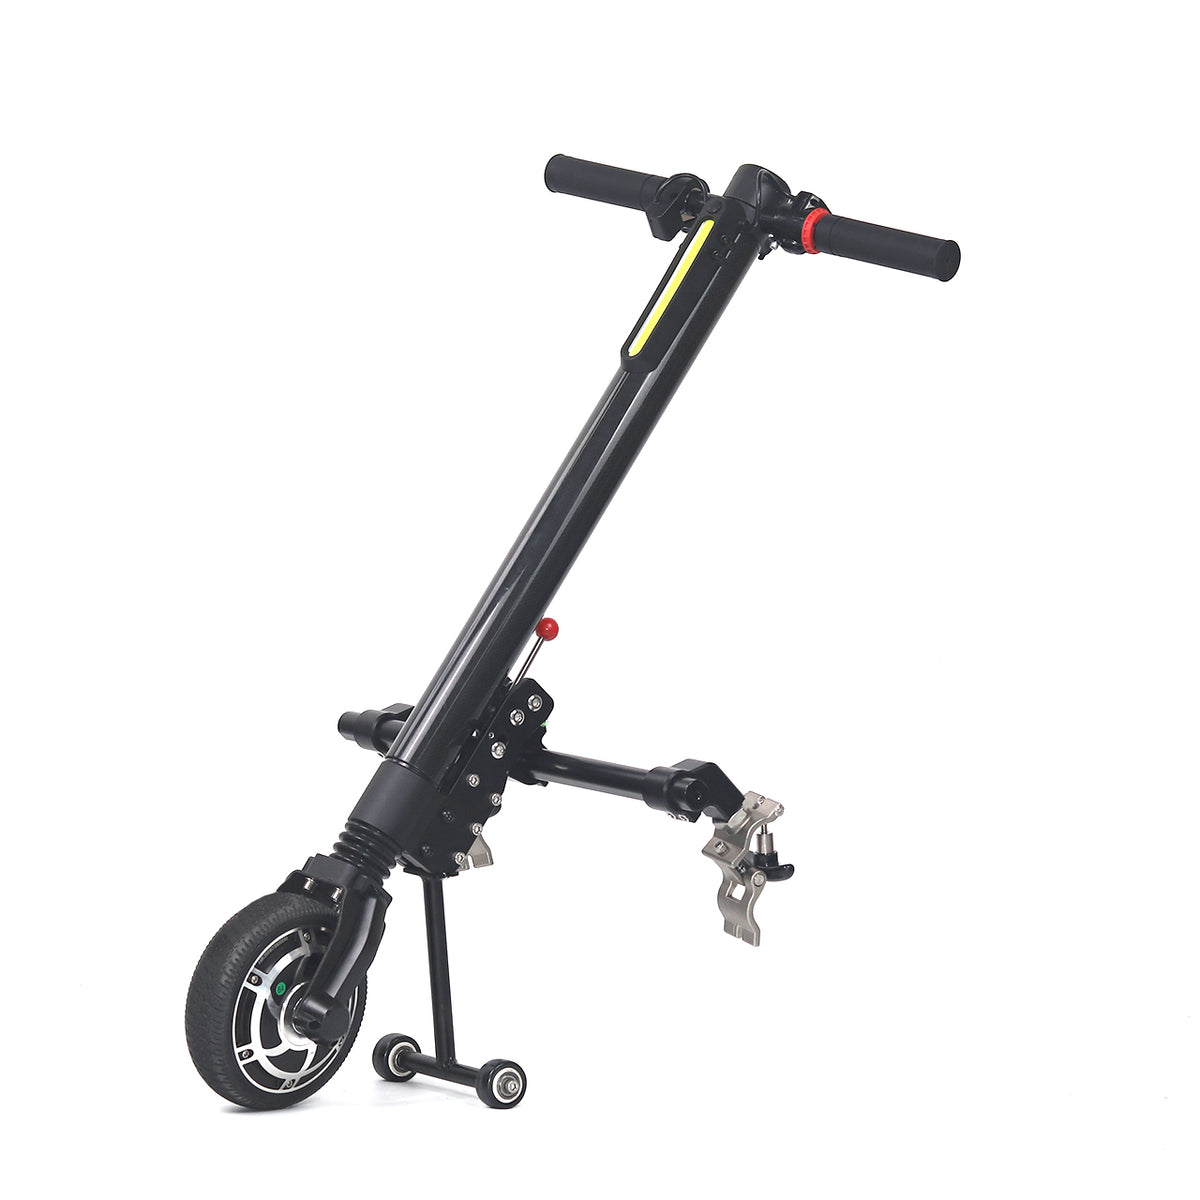 Bike de mano eléctrica compacta para sillas de ruedas manuales